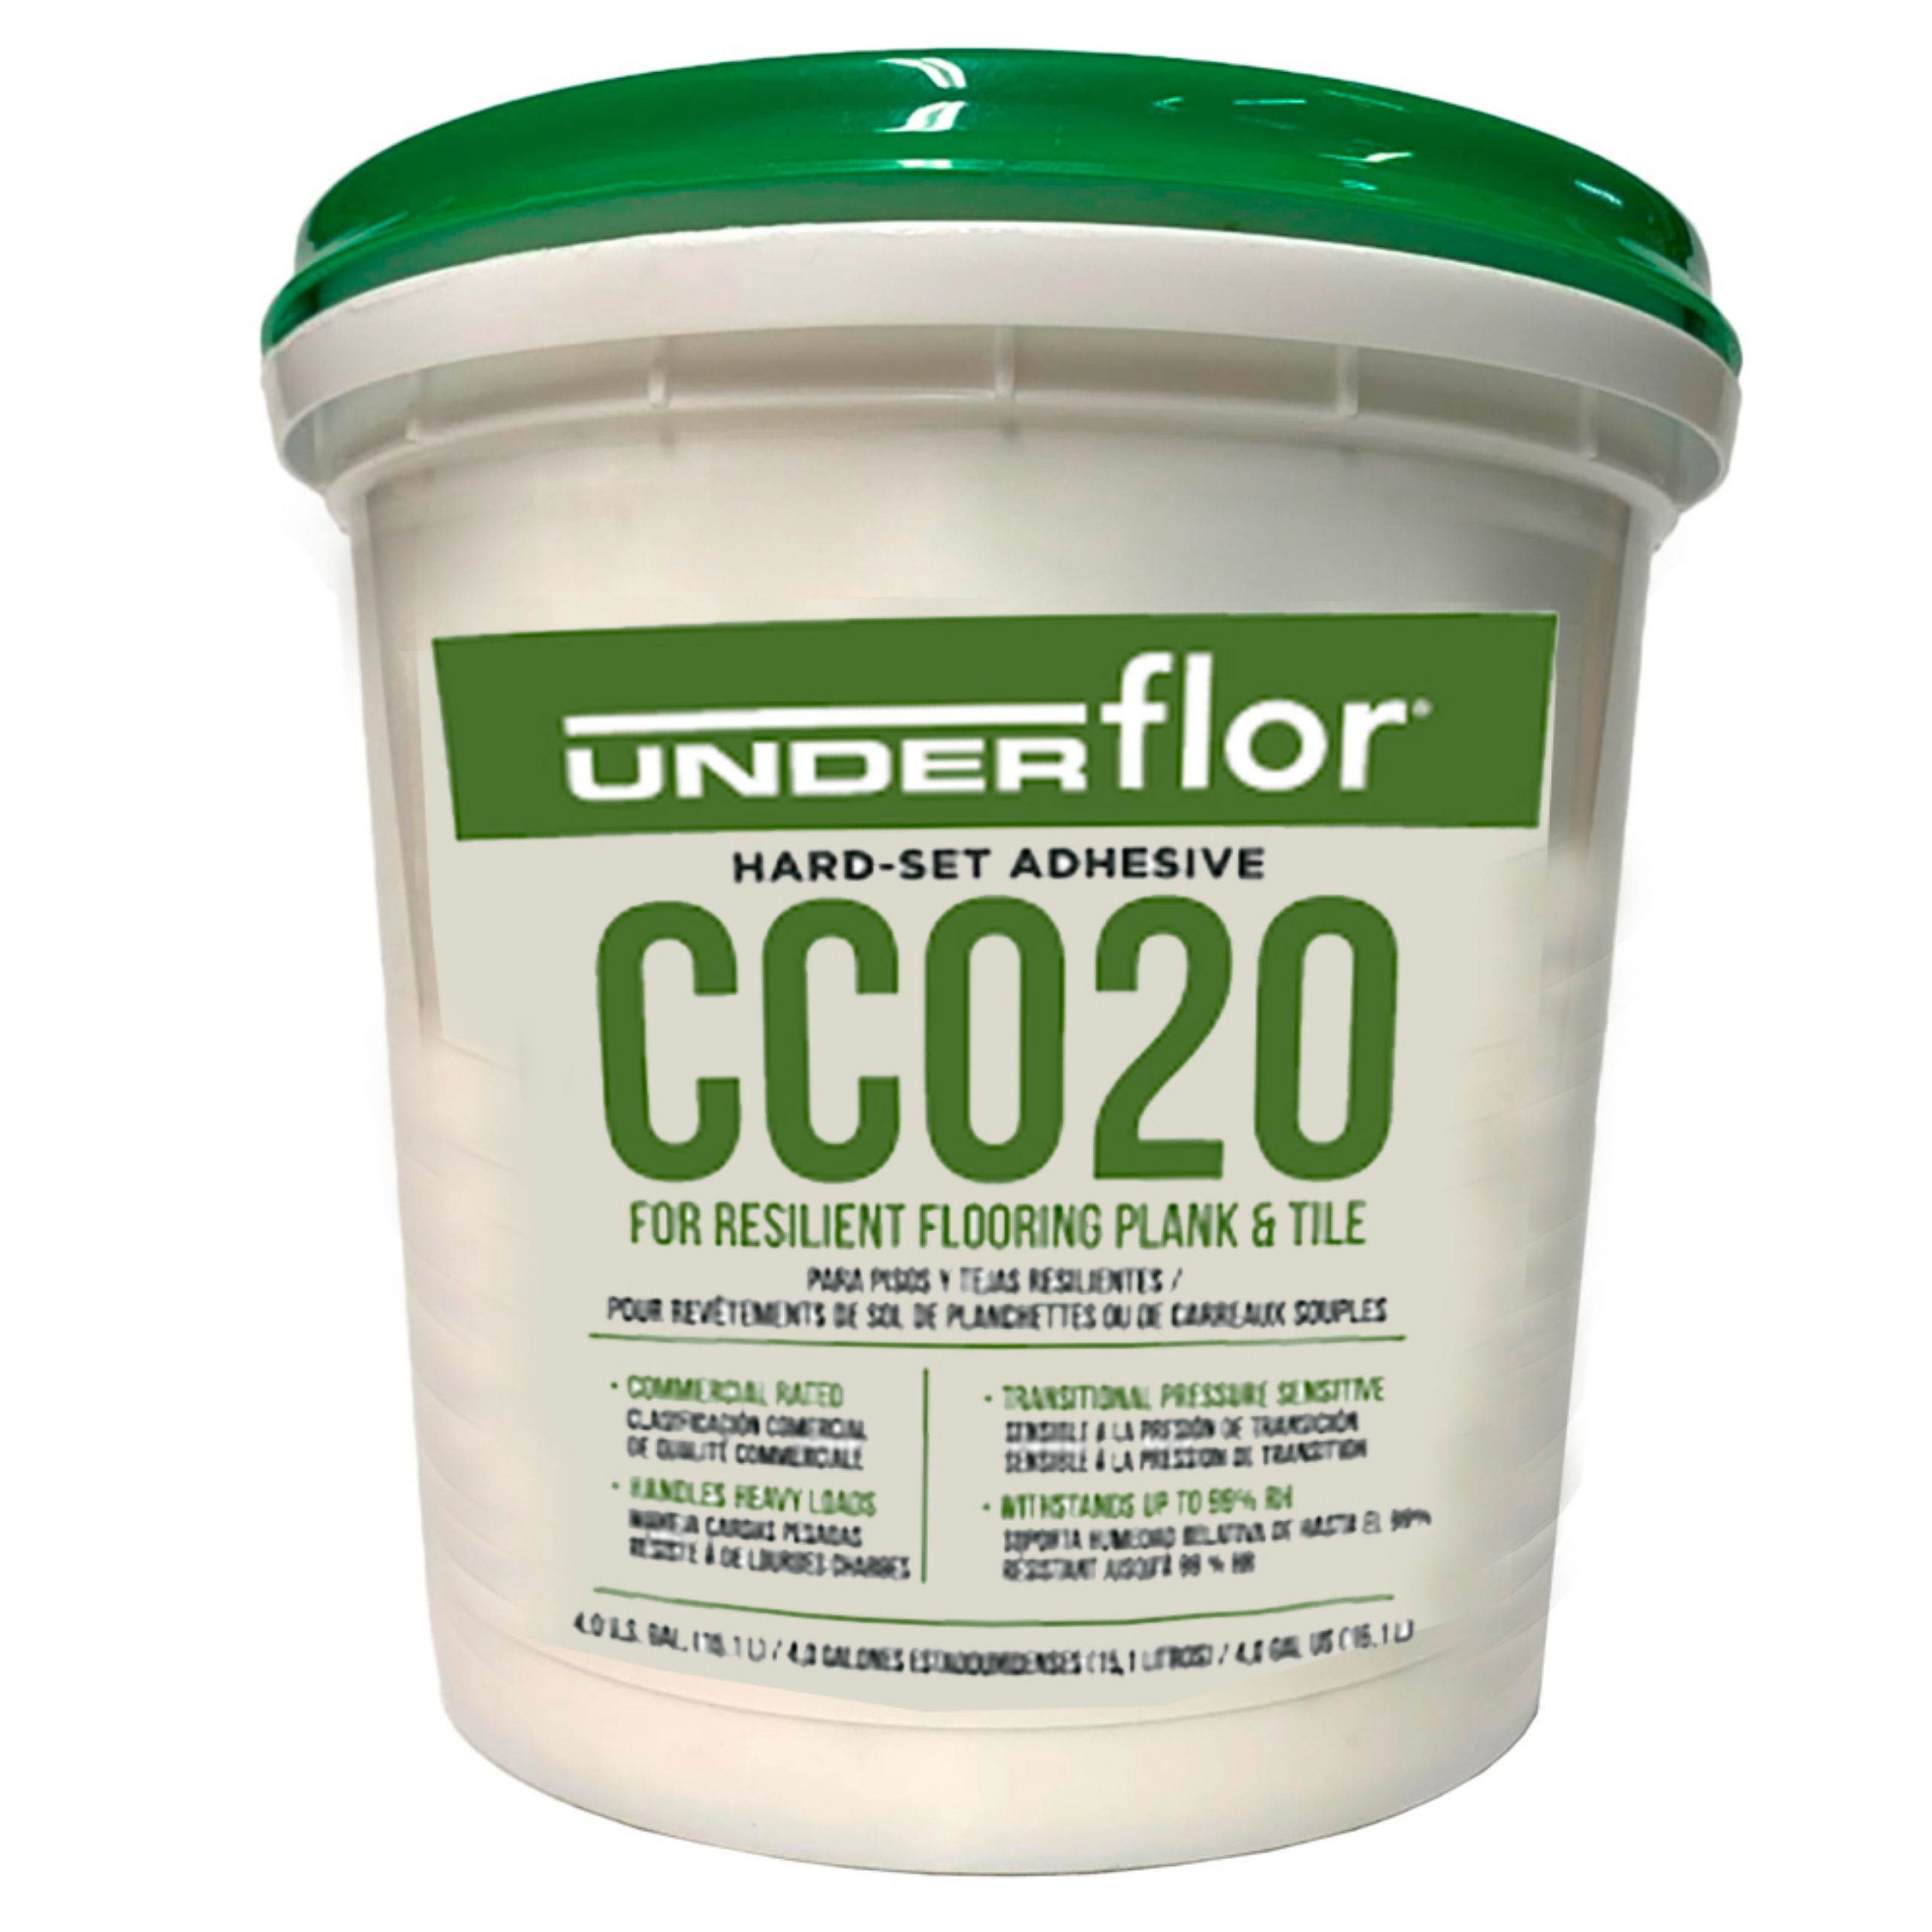 UnderFlor Adhésif CC020 4 gallon Commercial